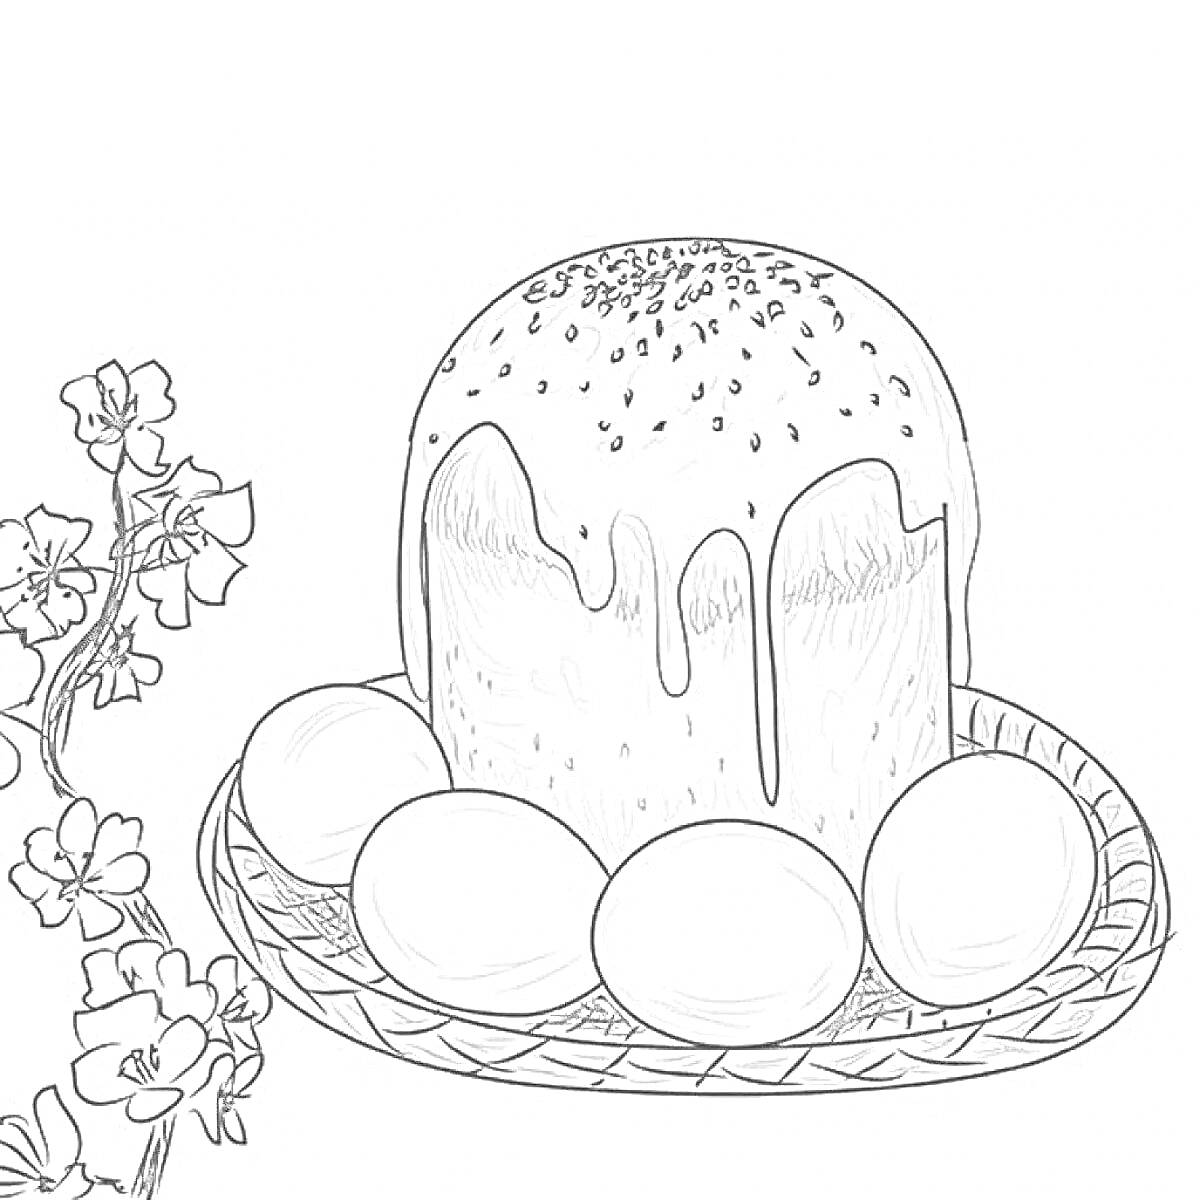 Раскраска Пасхальный кулич с глазурью и посыпкой, на подносе с яйцами, рядом цветы